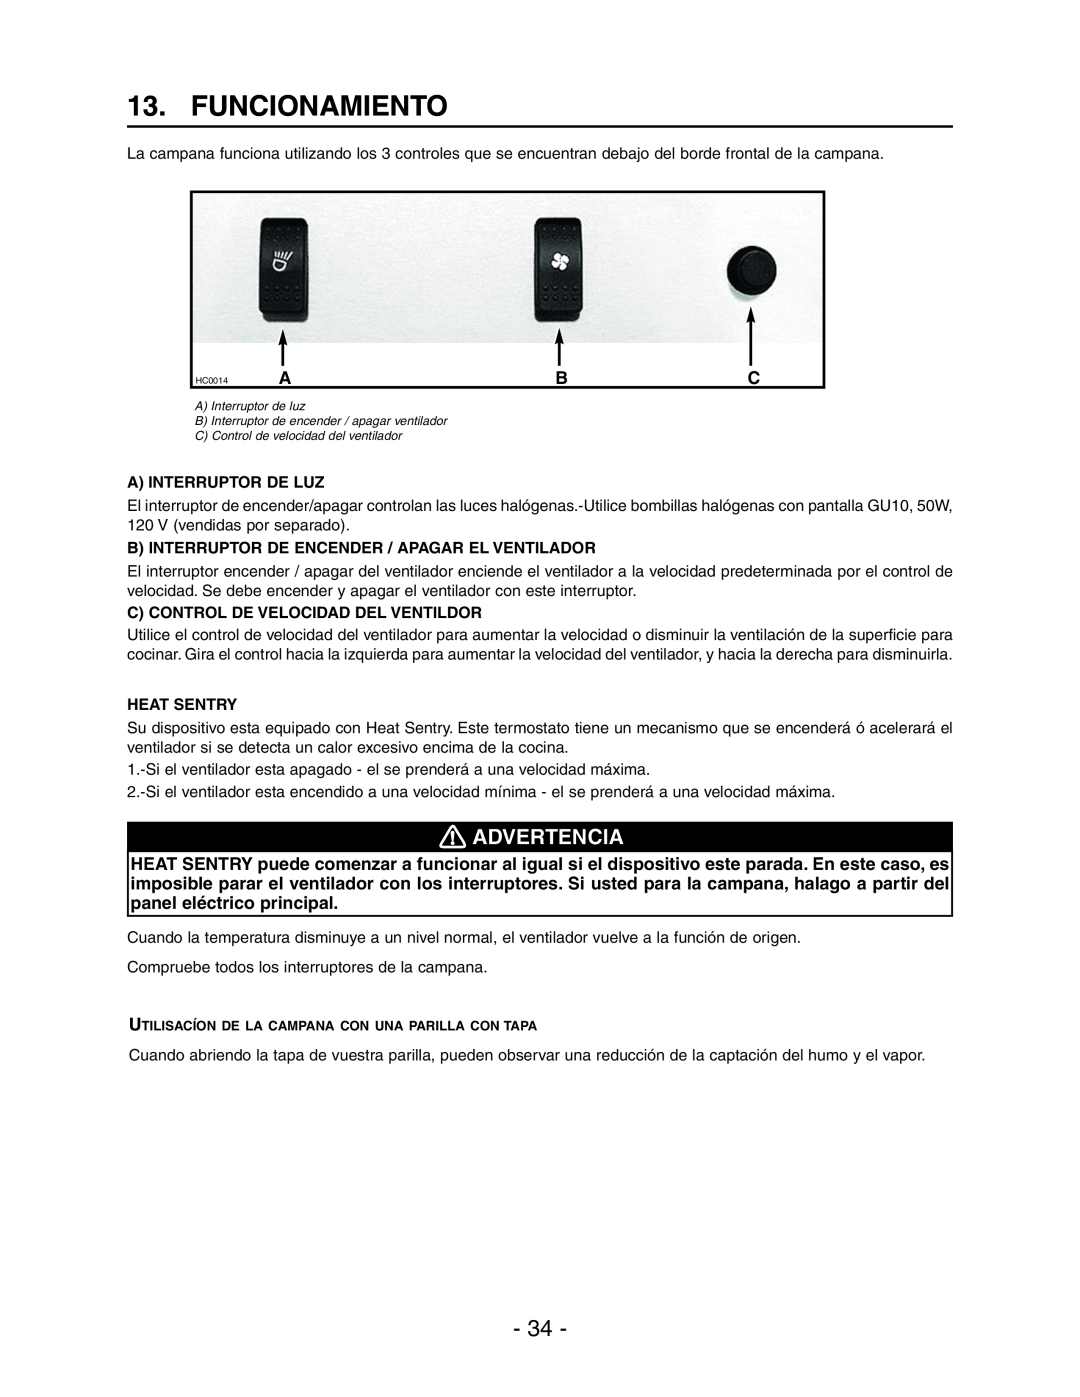 Best WPD28I Funcionamiento, Advertencia, A Interruptor De Luz, B Interruptor De Encender / Apagar El Ventilador 